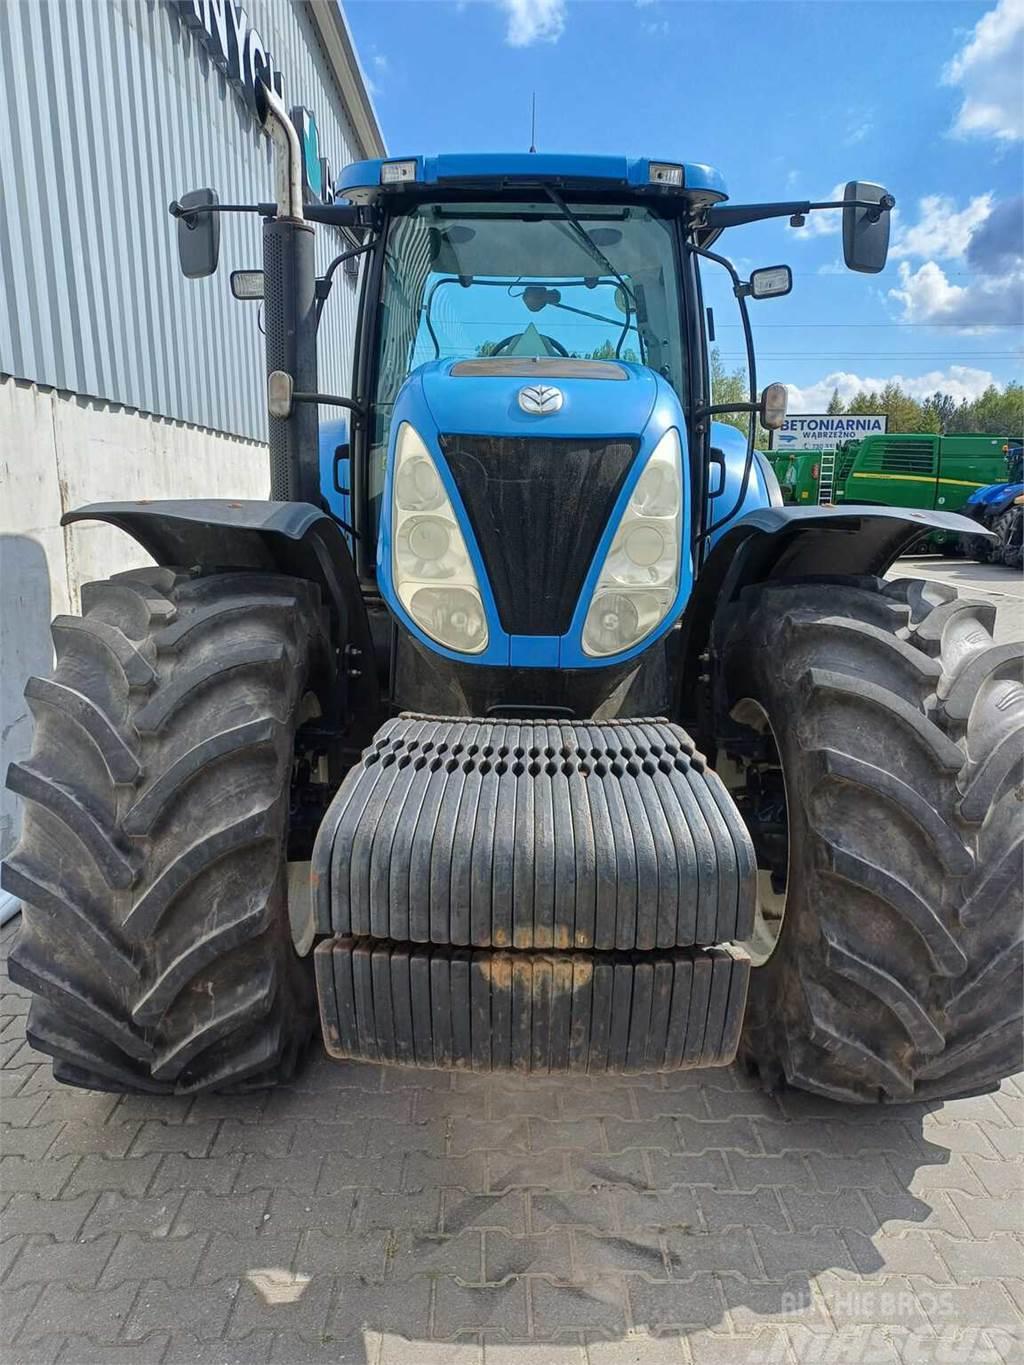 New Holland T7060 Tractors